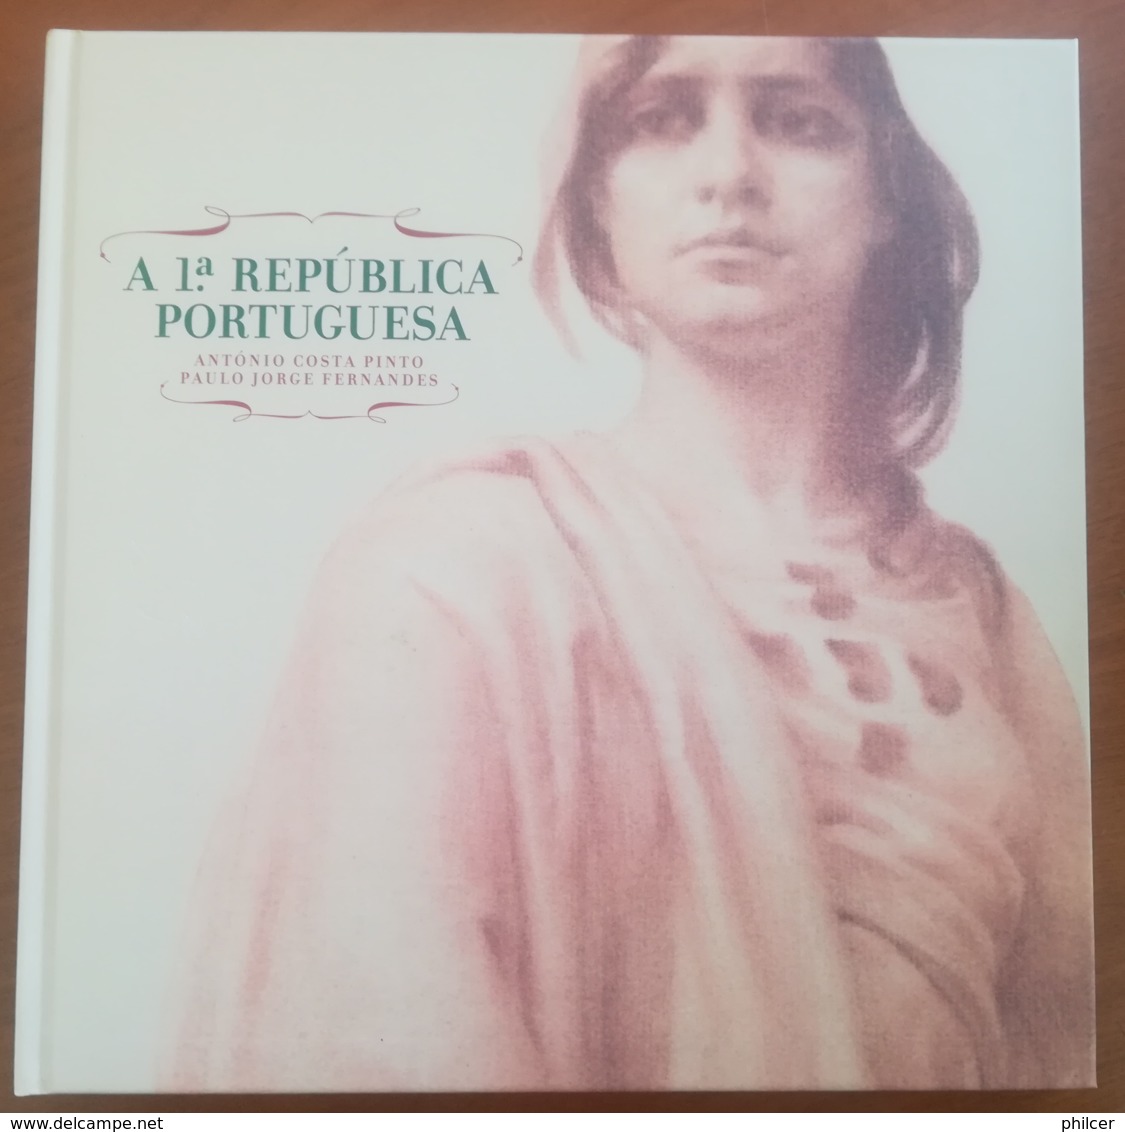 Portugal, 2010, # 88, A 1ª República Portuguesa - Libro Del Año